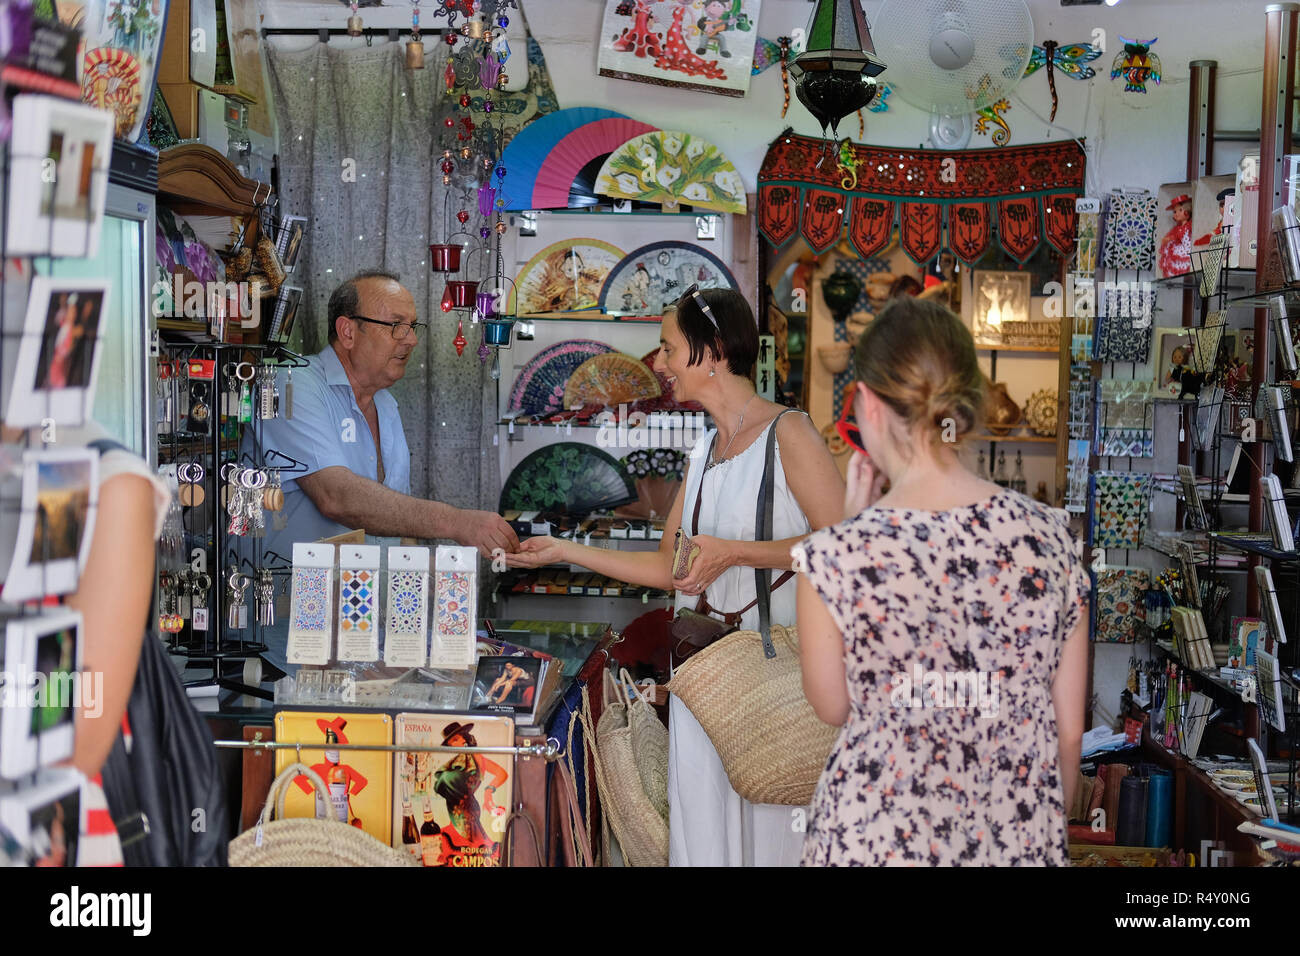 Un touriste anglais dans une boutique de cadeaux en Espagne Banque D'Images